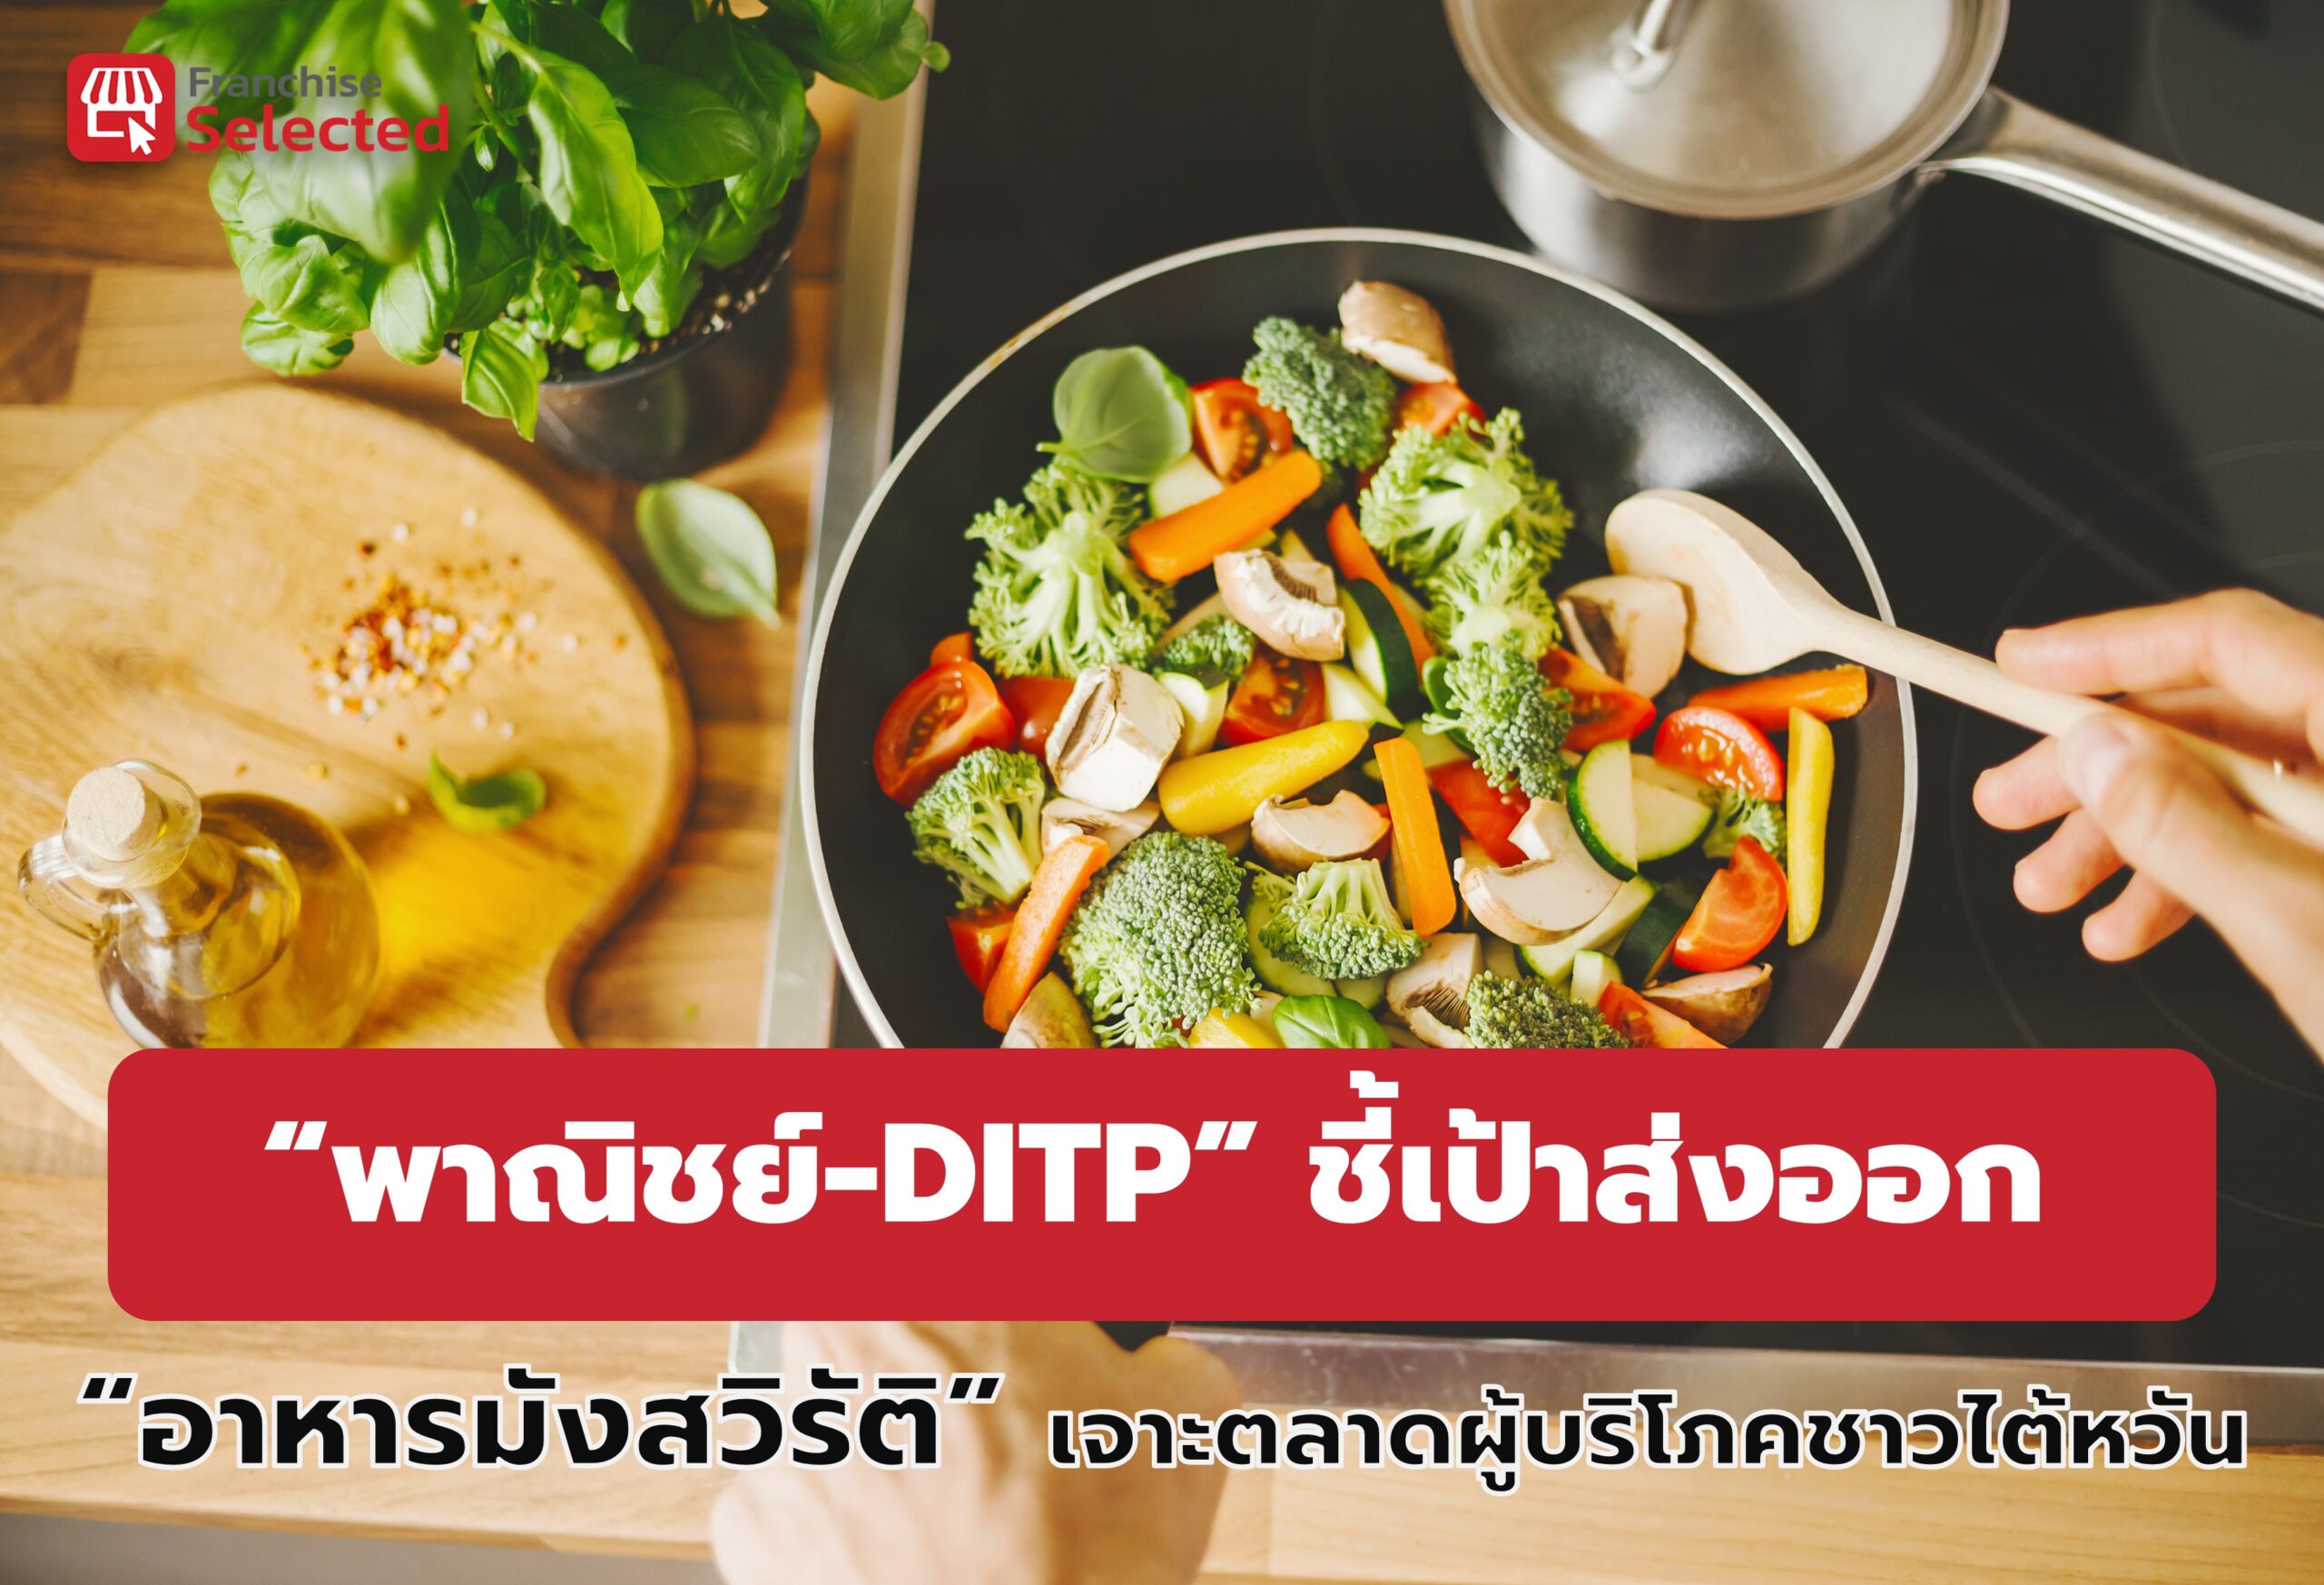 “พาณิชย์-DITP” ชี้เป้าส่งออก “อาหารมังสวิรัติ” เจาะตลาดผู้บริโภคชาวไต้หวัน